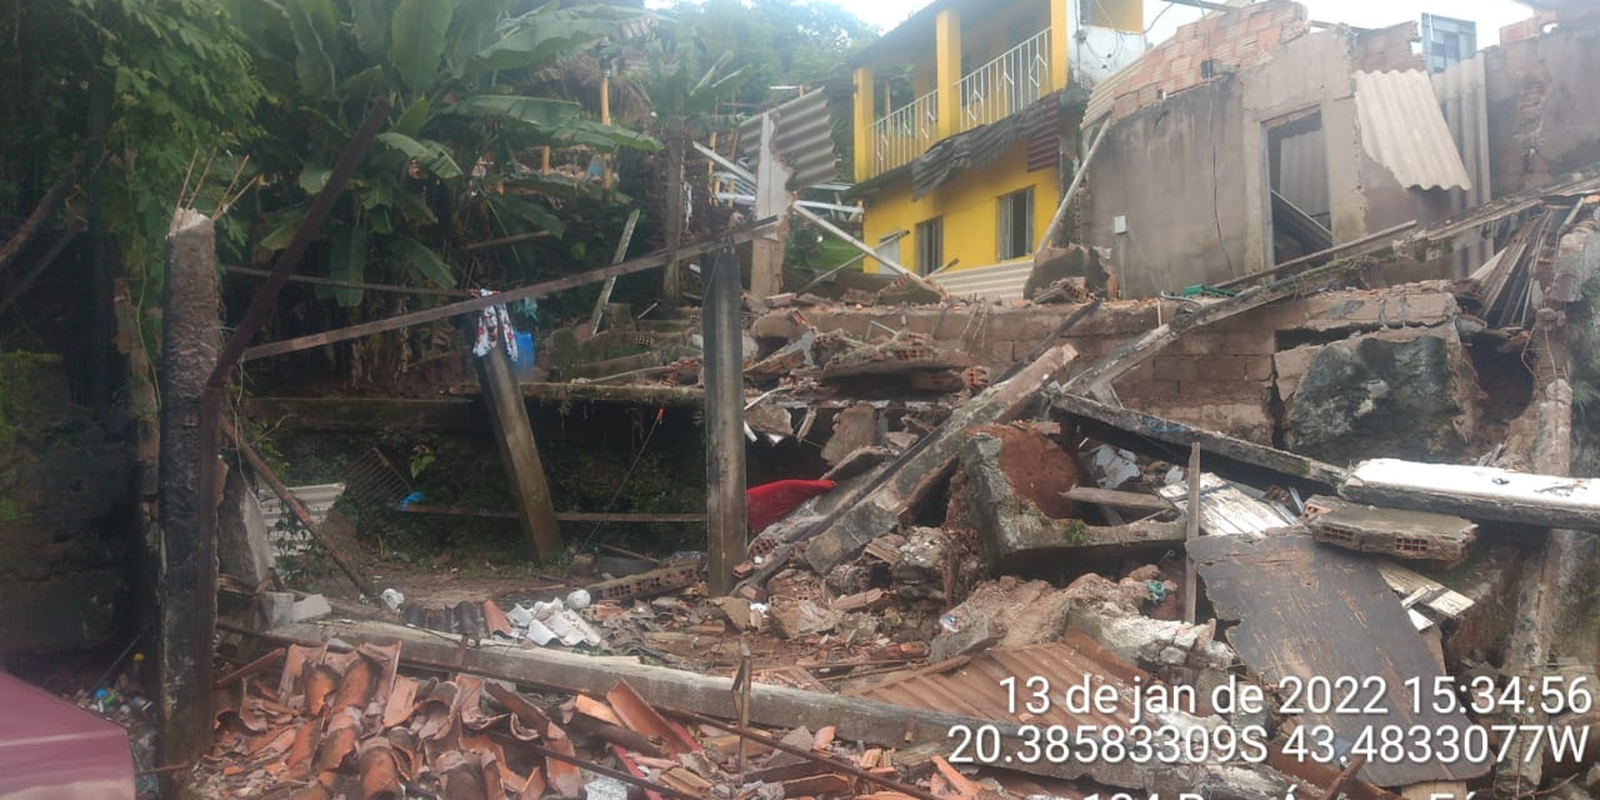 Defesa Civil remove 80 famílias de área de risco em Ouro Preto